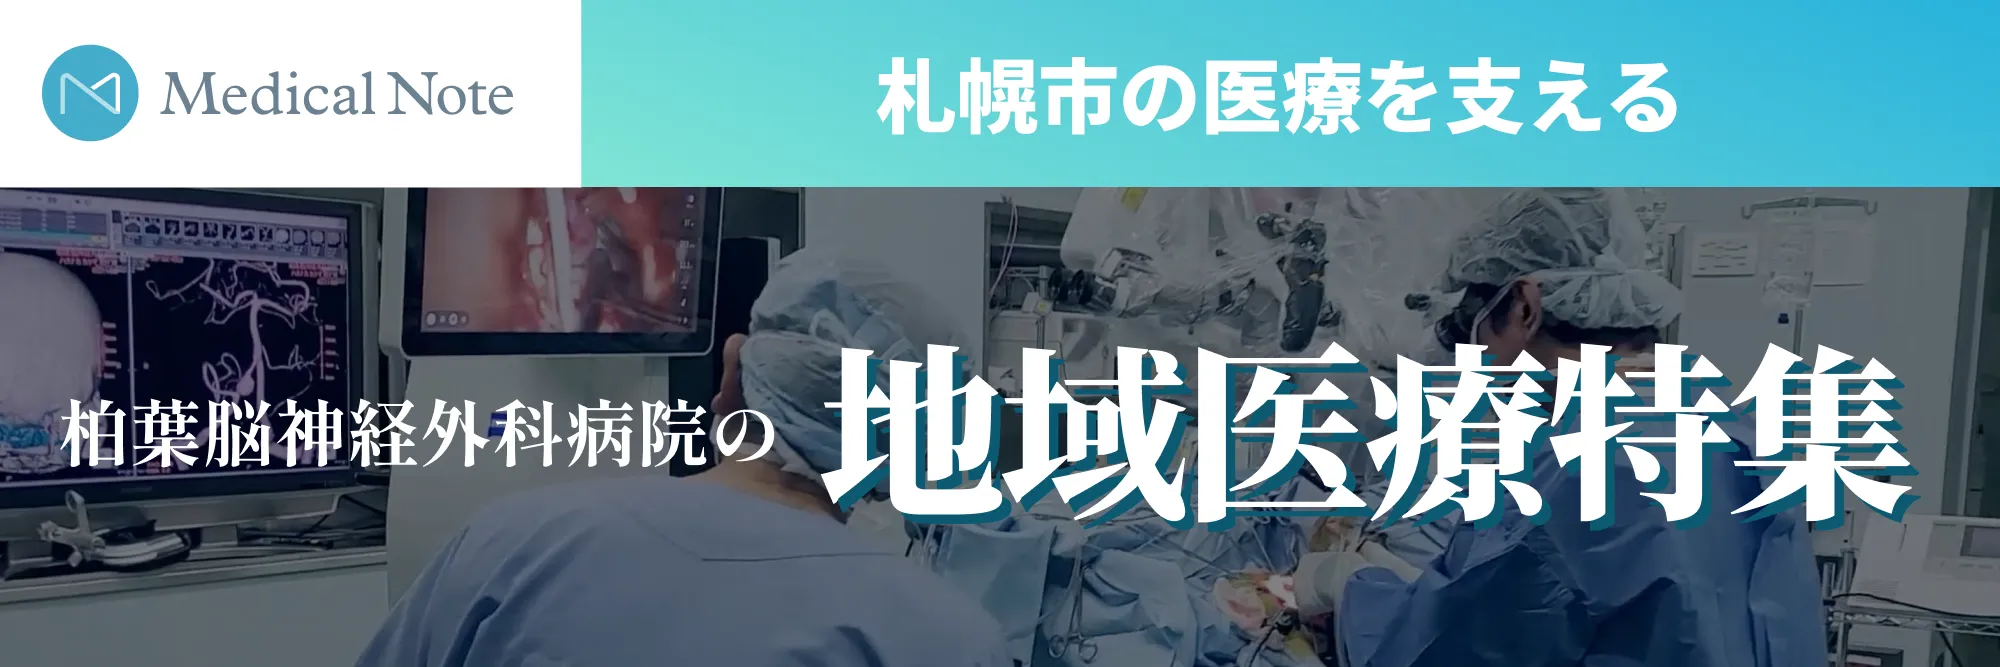 Medical Note 札幌市の医療を支える柏葉脳神経外科病院の地域医療特集